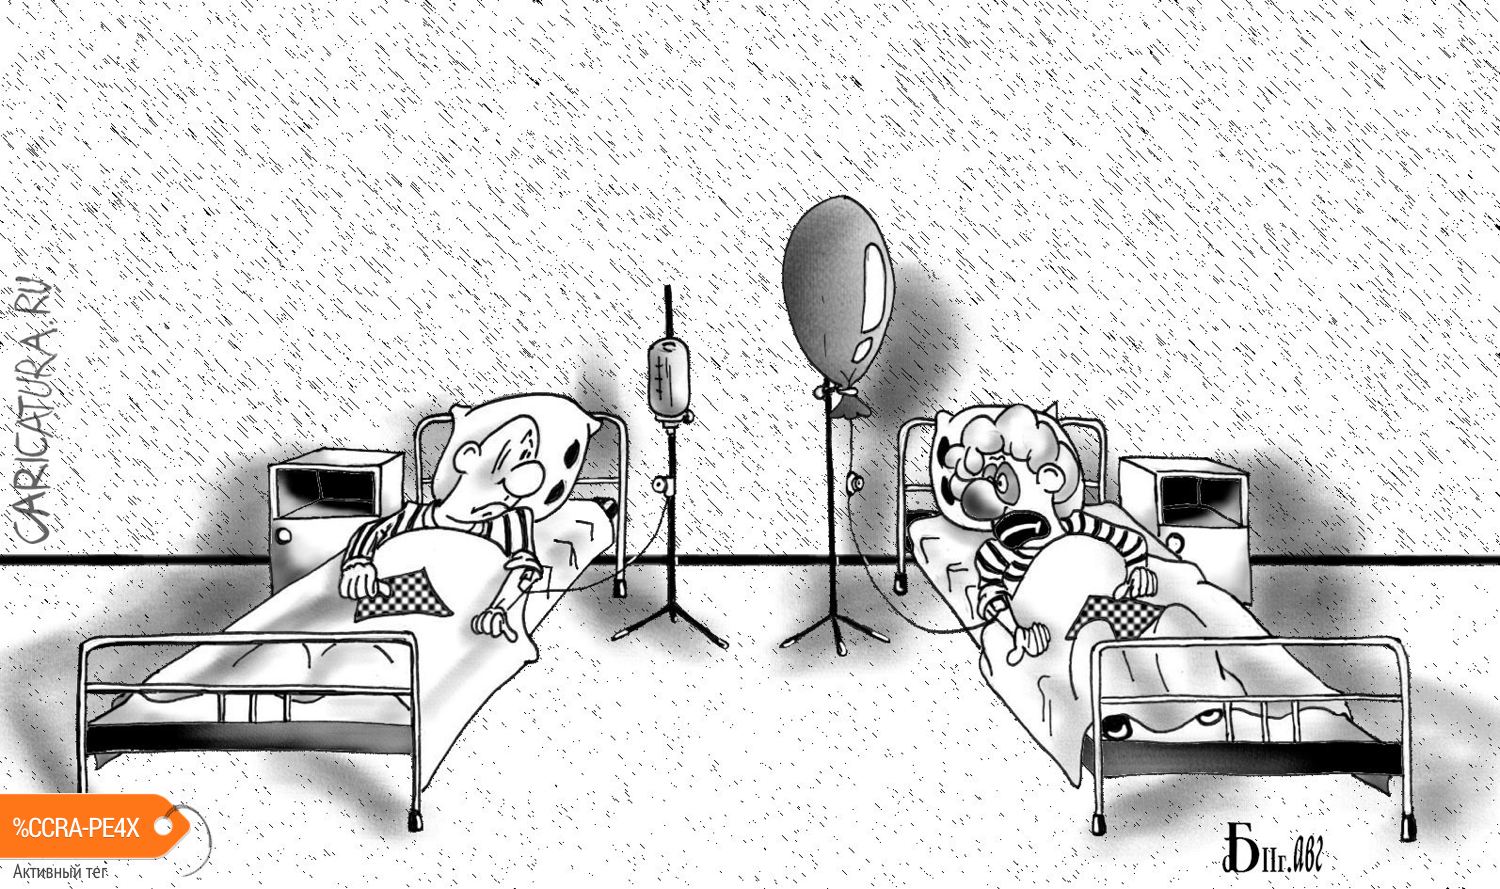 Карикатура "Под капельницей", Борис Демин